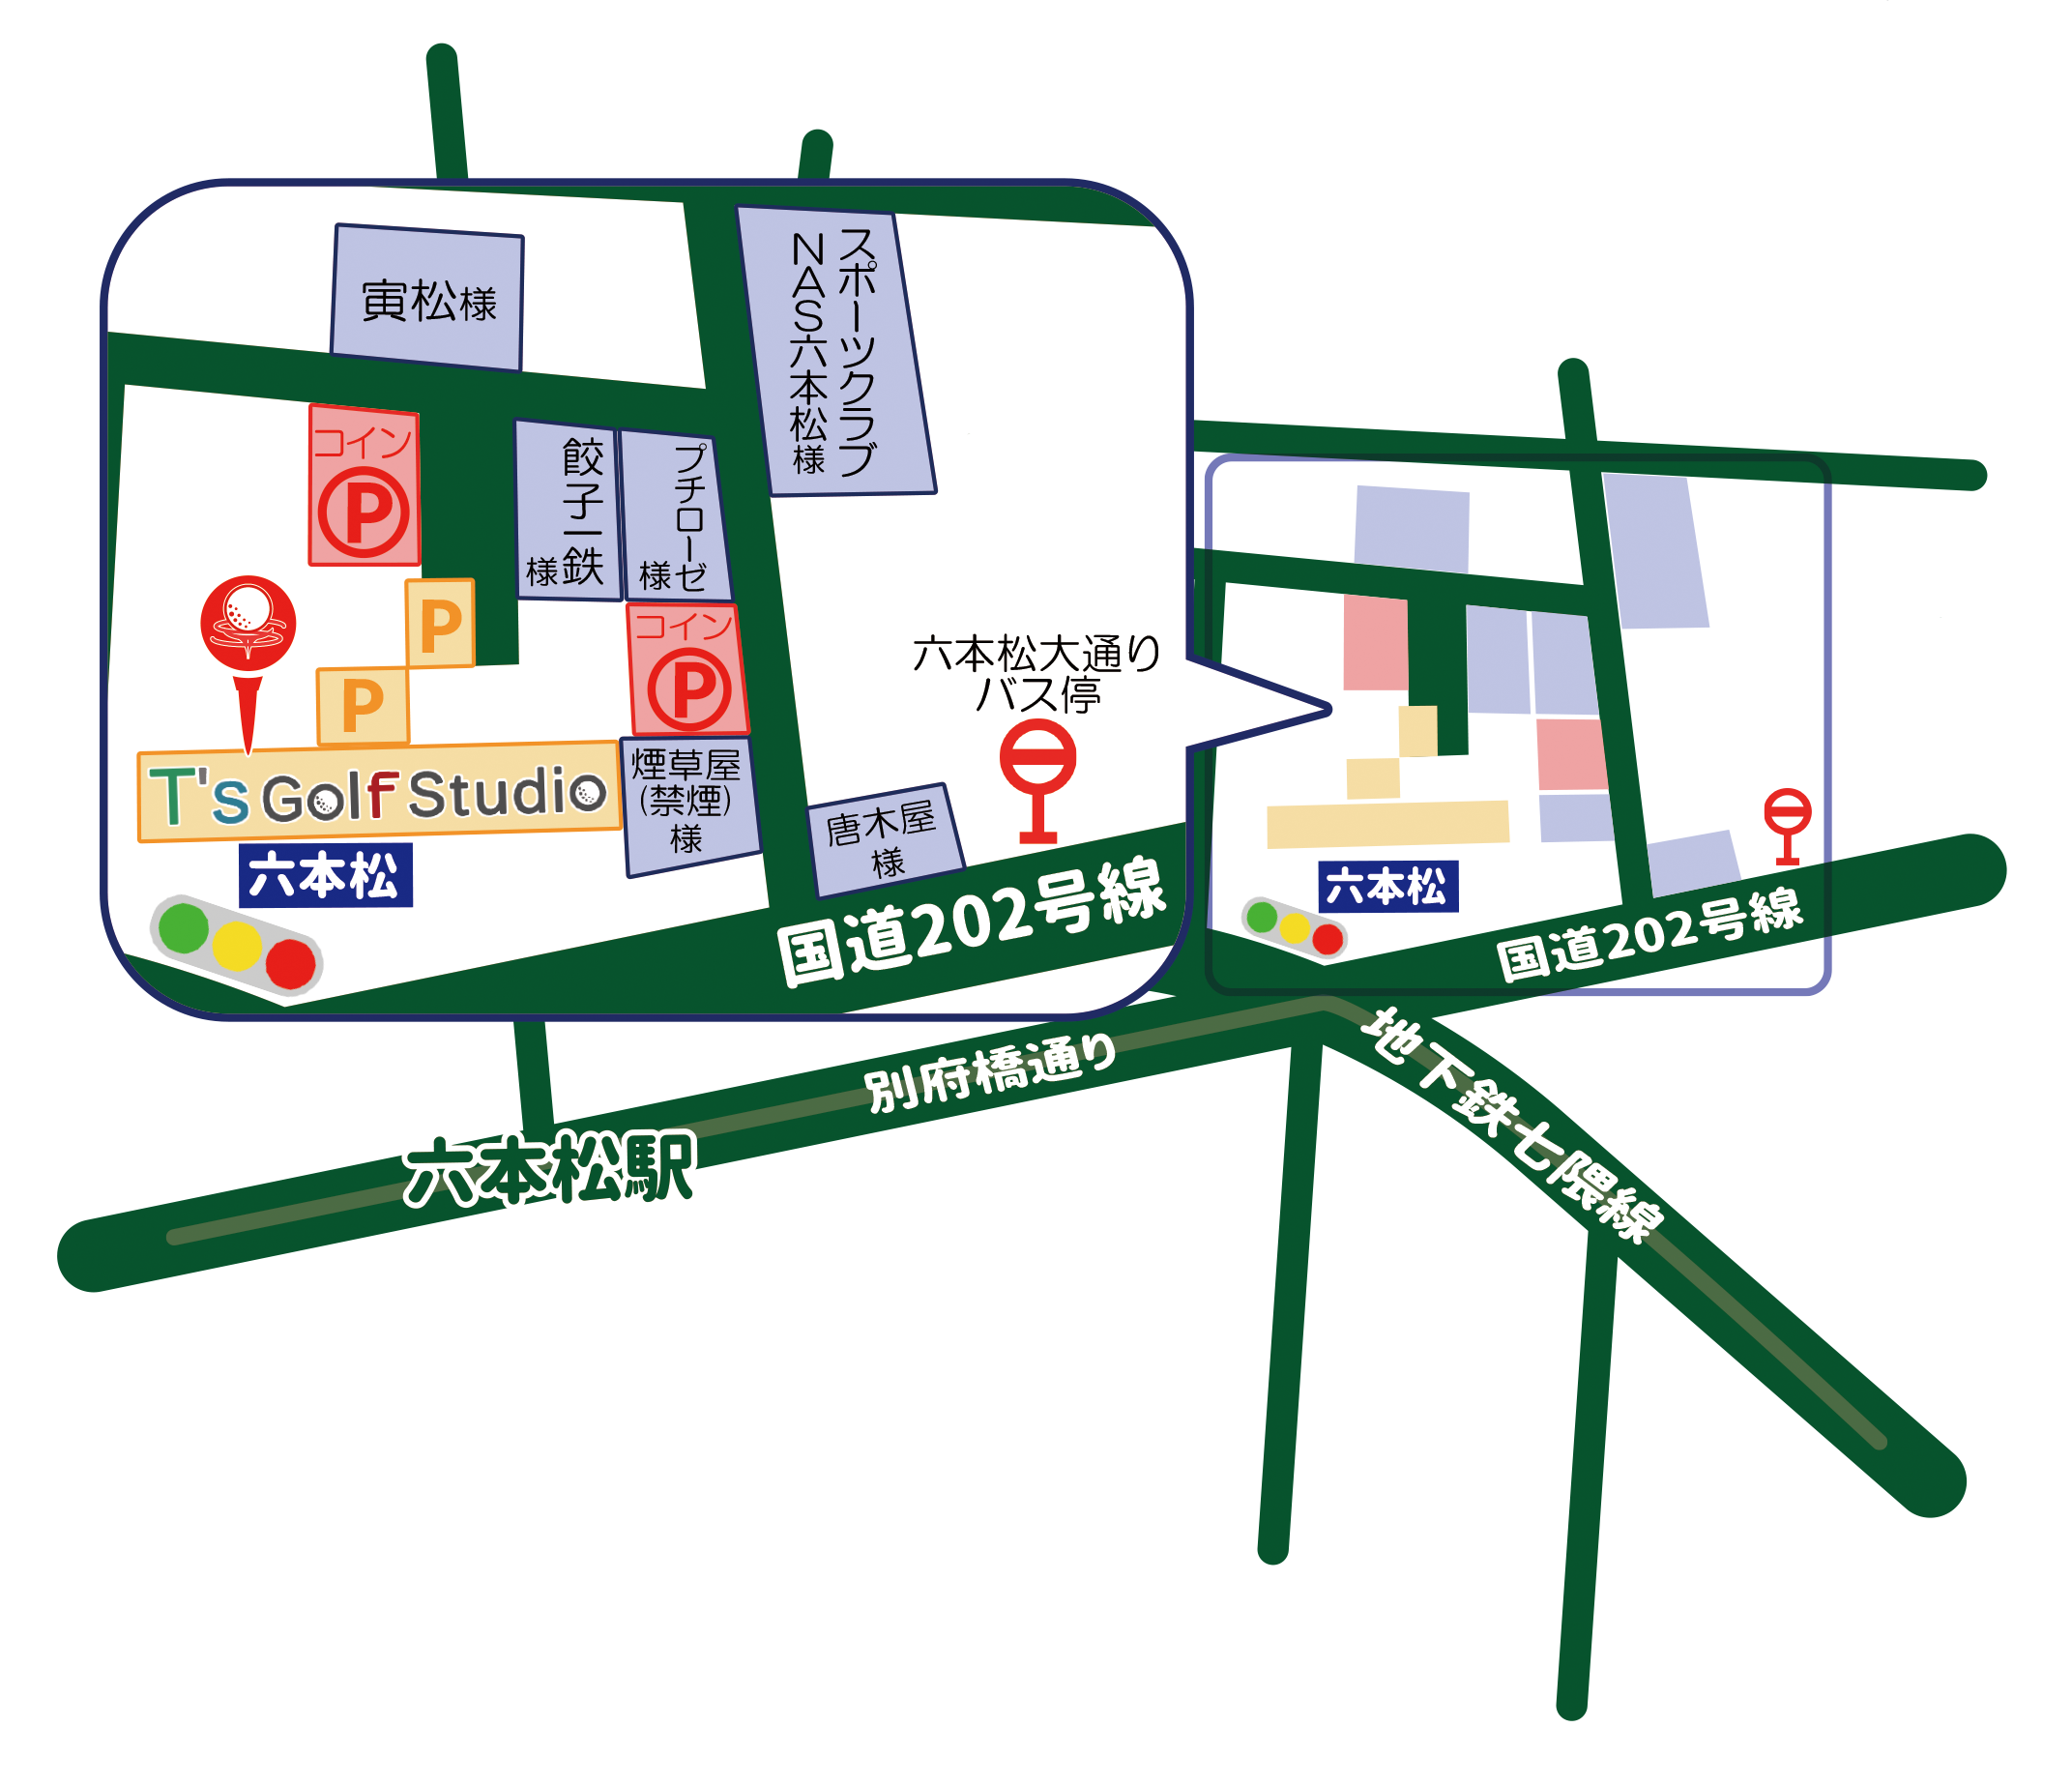 地下鉄:福岡市七隈線六本松駅から徒歩五分 Fukuoka T's Golf studio